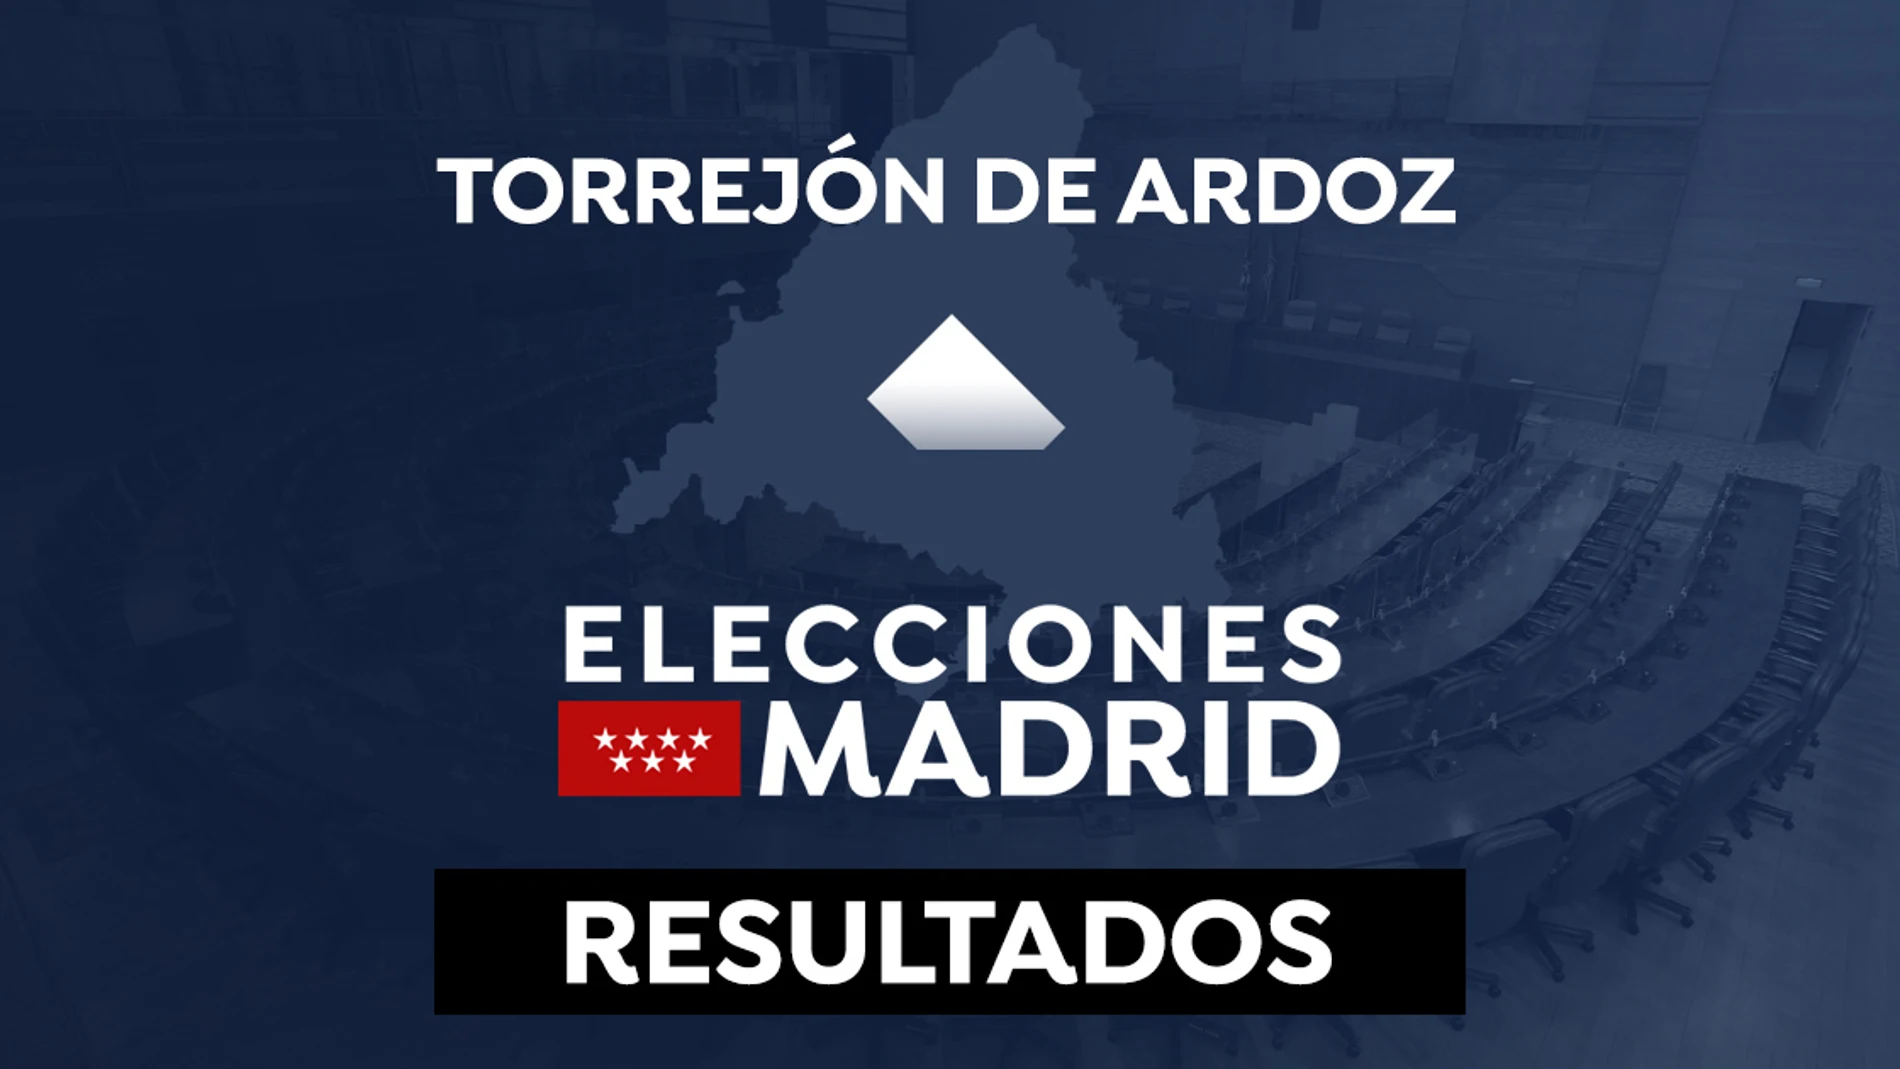 Resultado en Torrejón de Ardoz de las elecciones a la Comunidad de Madrid